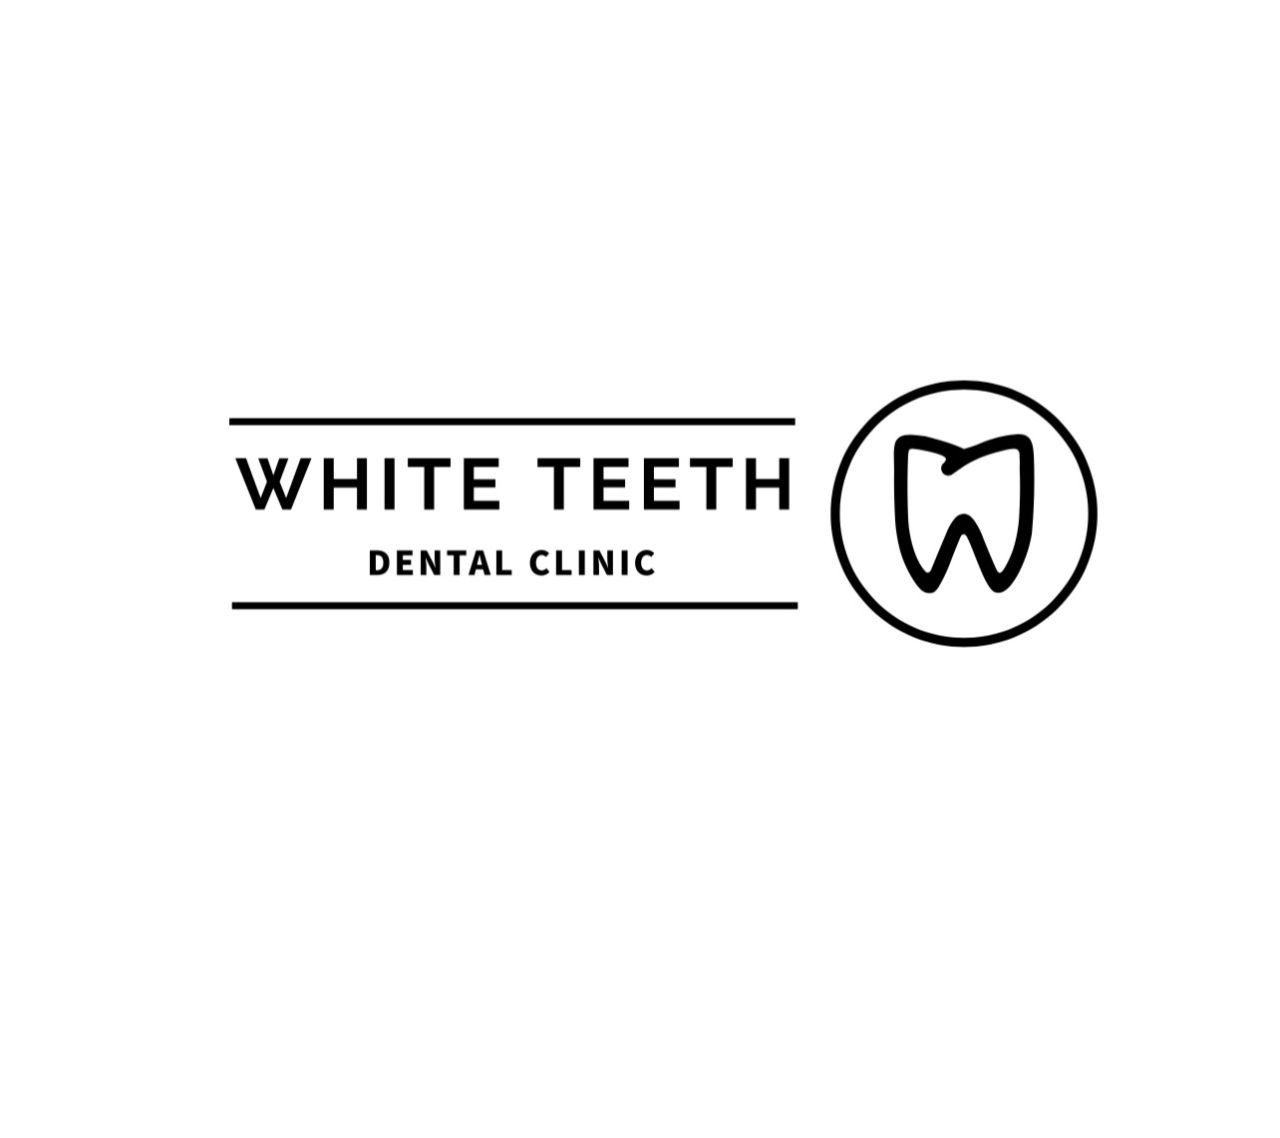 White teeth dental clinic